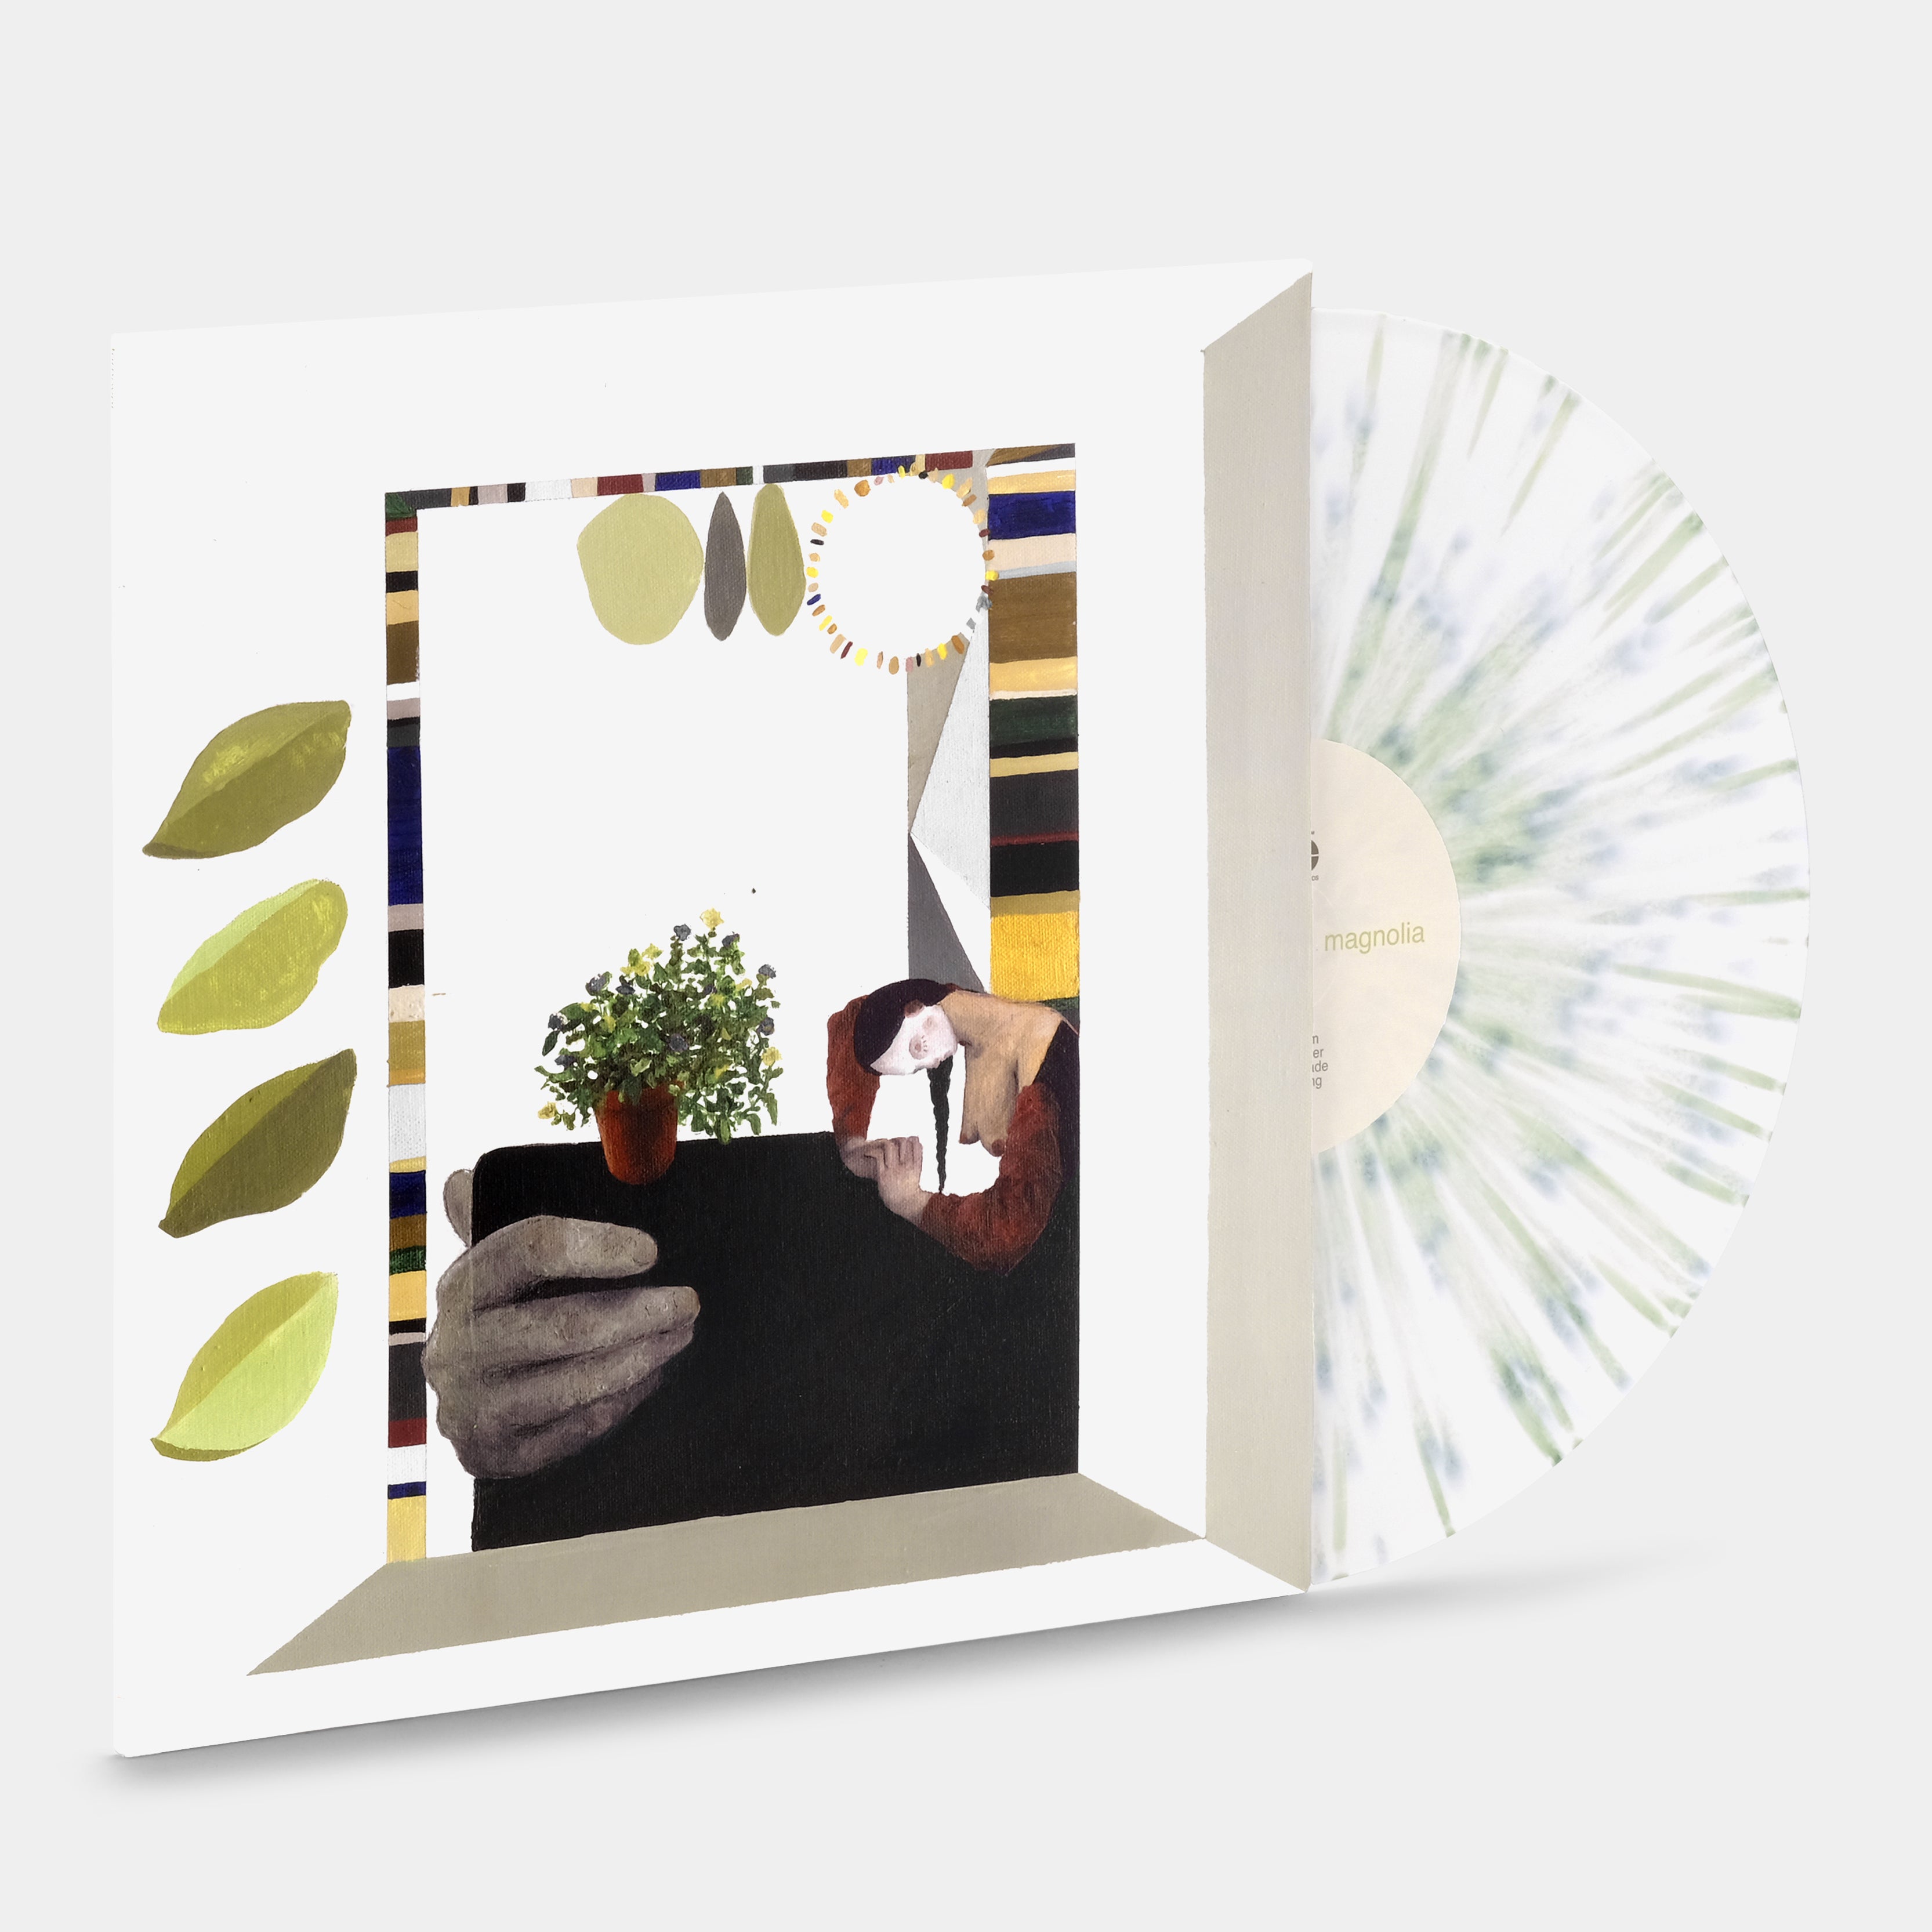 Turnover - Magnolia LP White & Green Splatter Vinyl Record